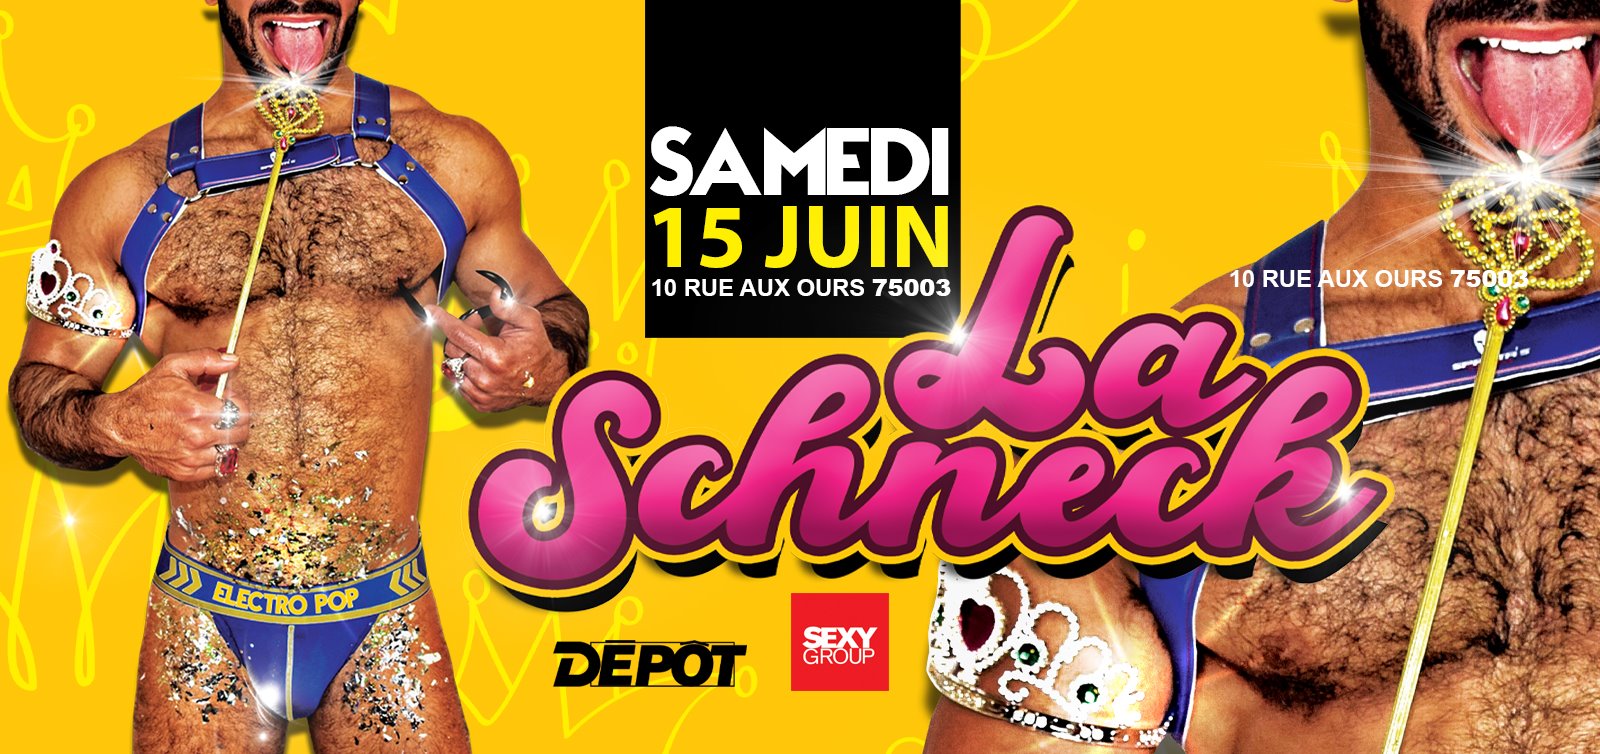 La Schnek 15 Juin 2019 @Le Depot